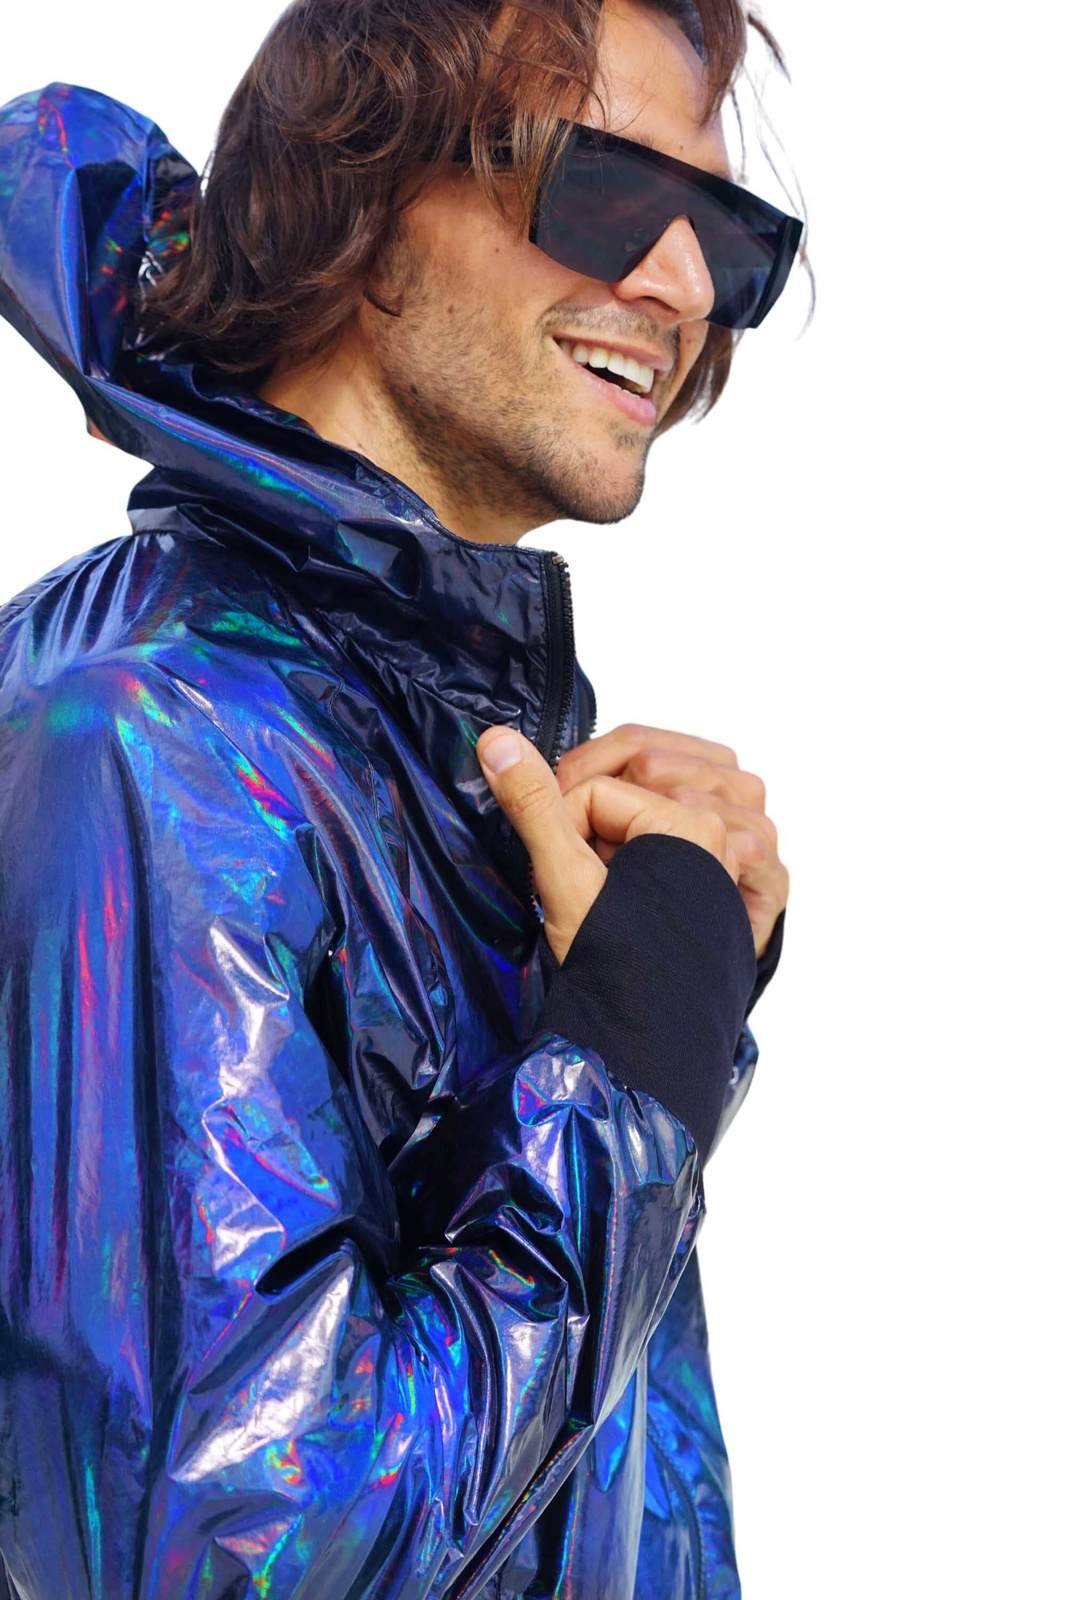 Mens Waterproof Festival Jacket from Love Khaos Streetwear brand